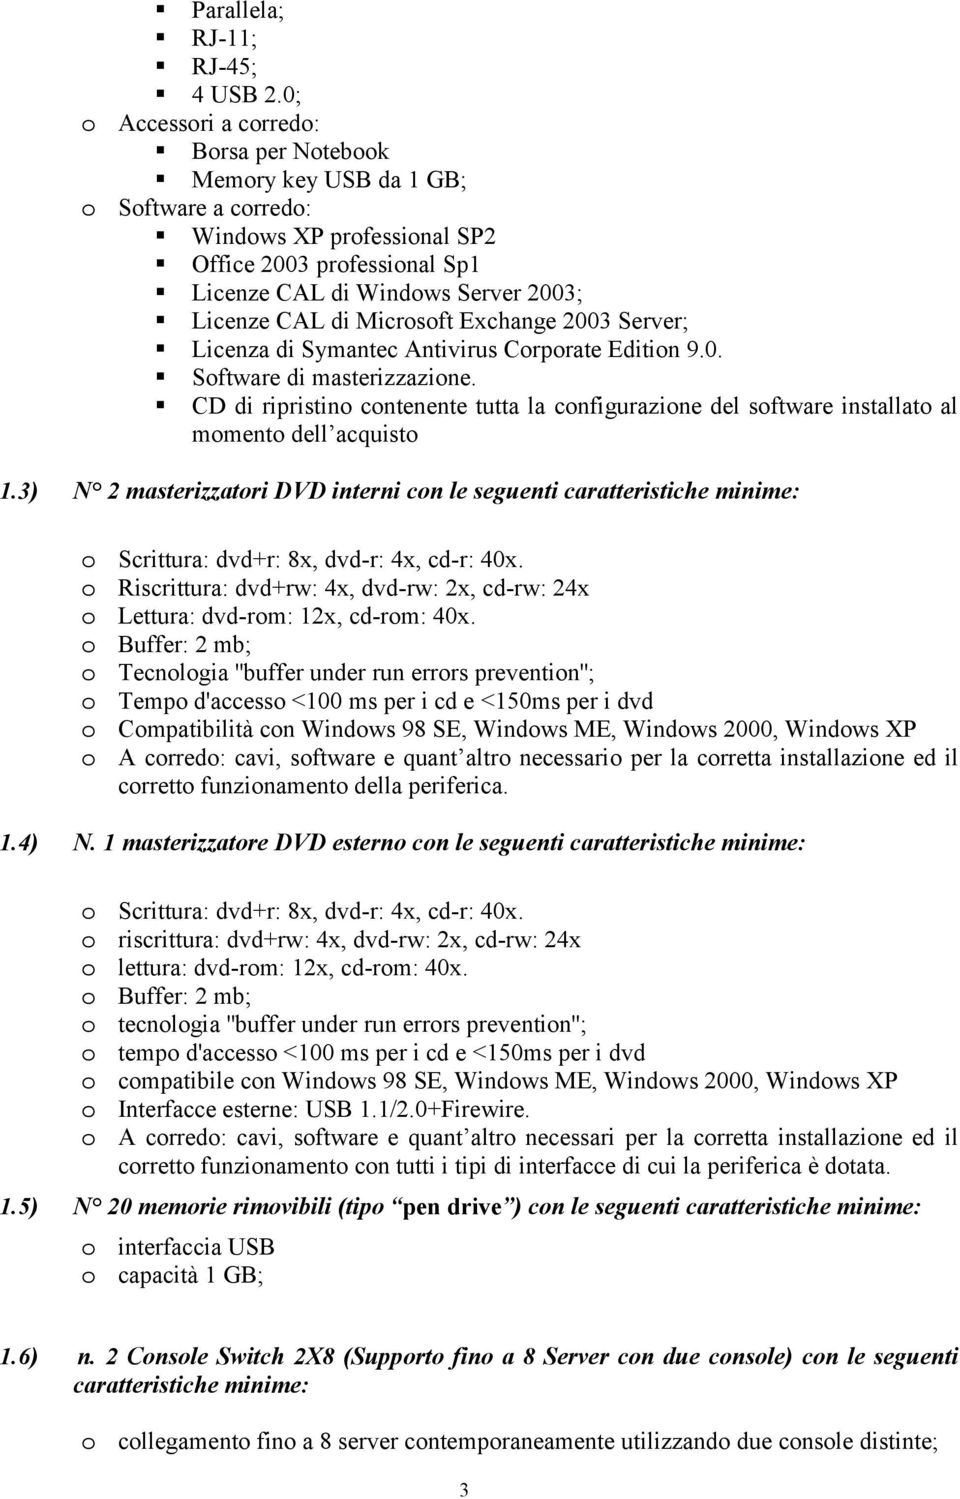 Microsoft Exchange 2003 Server; Licenza di Symantec Antivirus Corporate Edition 9.0. Software di masterizzazione.